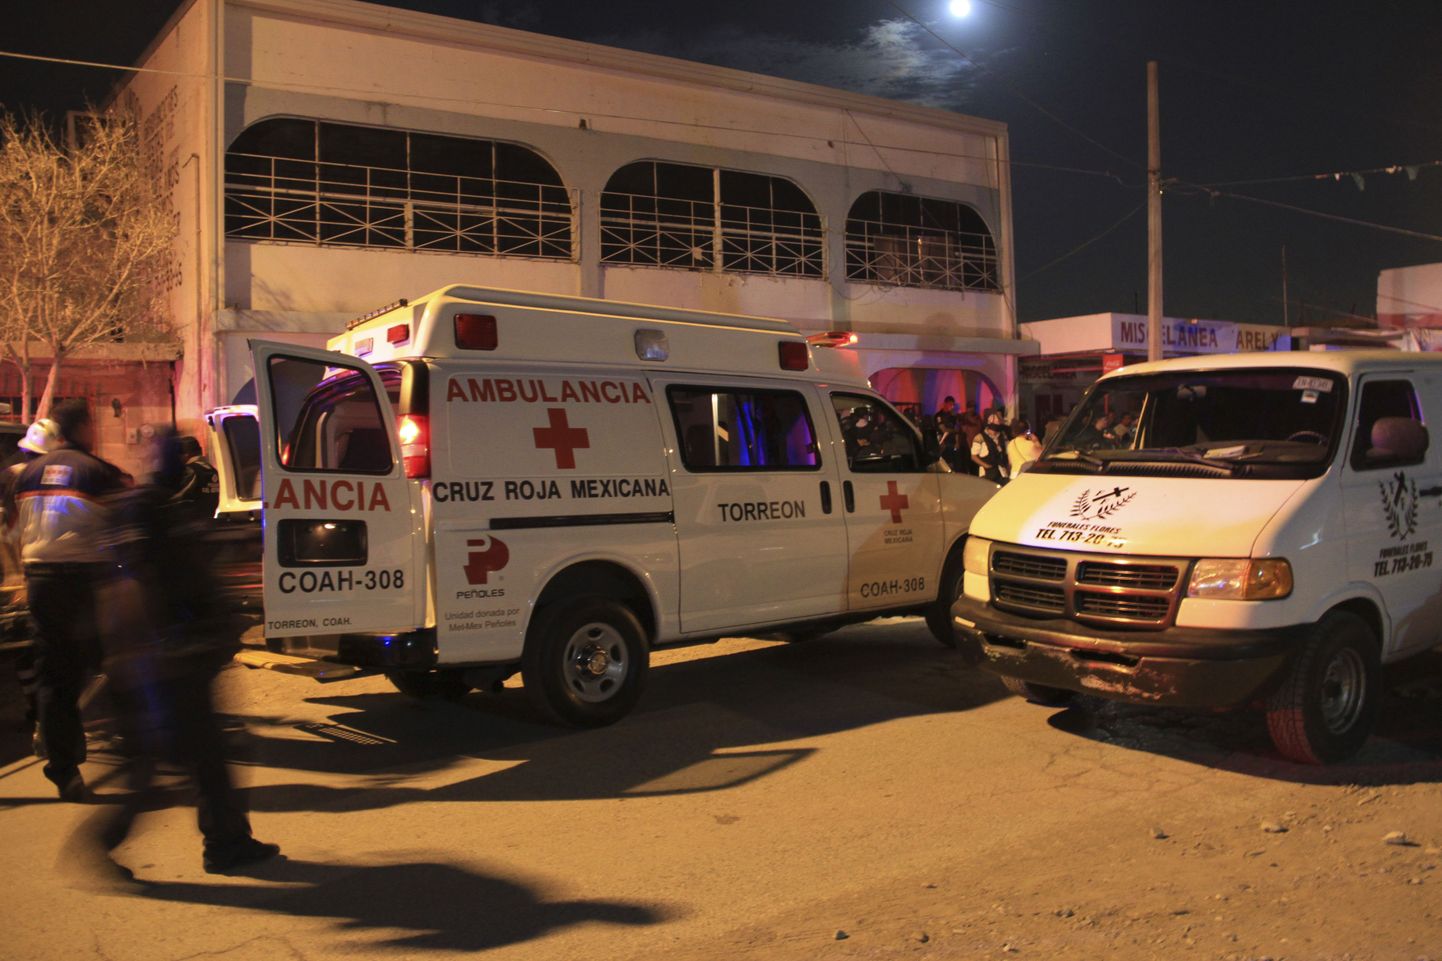 Kiirabiautod narkovõõrutuskeskuse ees 3.juunil Torreonis.